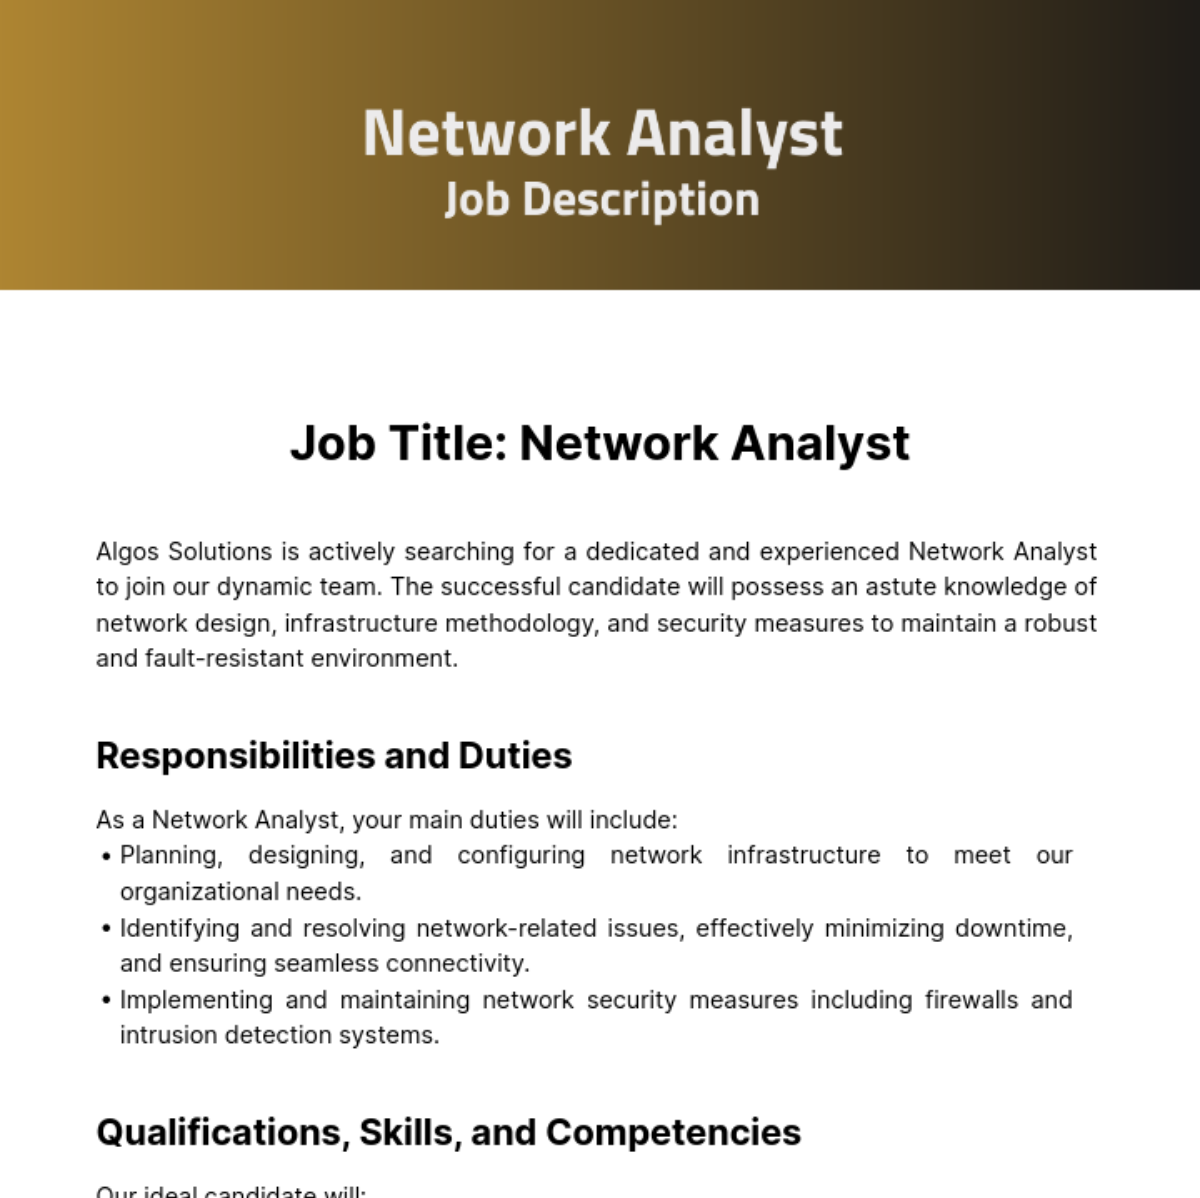 Network Analyst Job Description Template